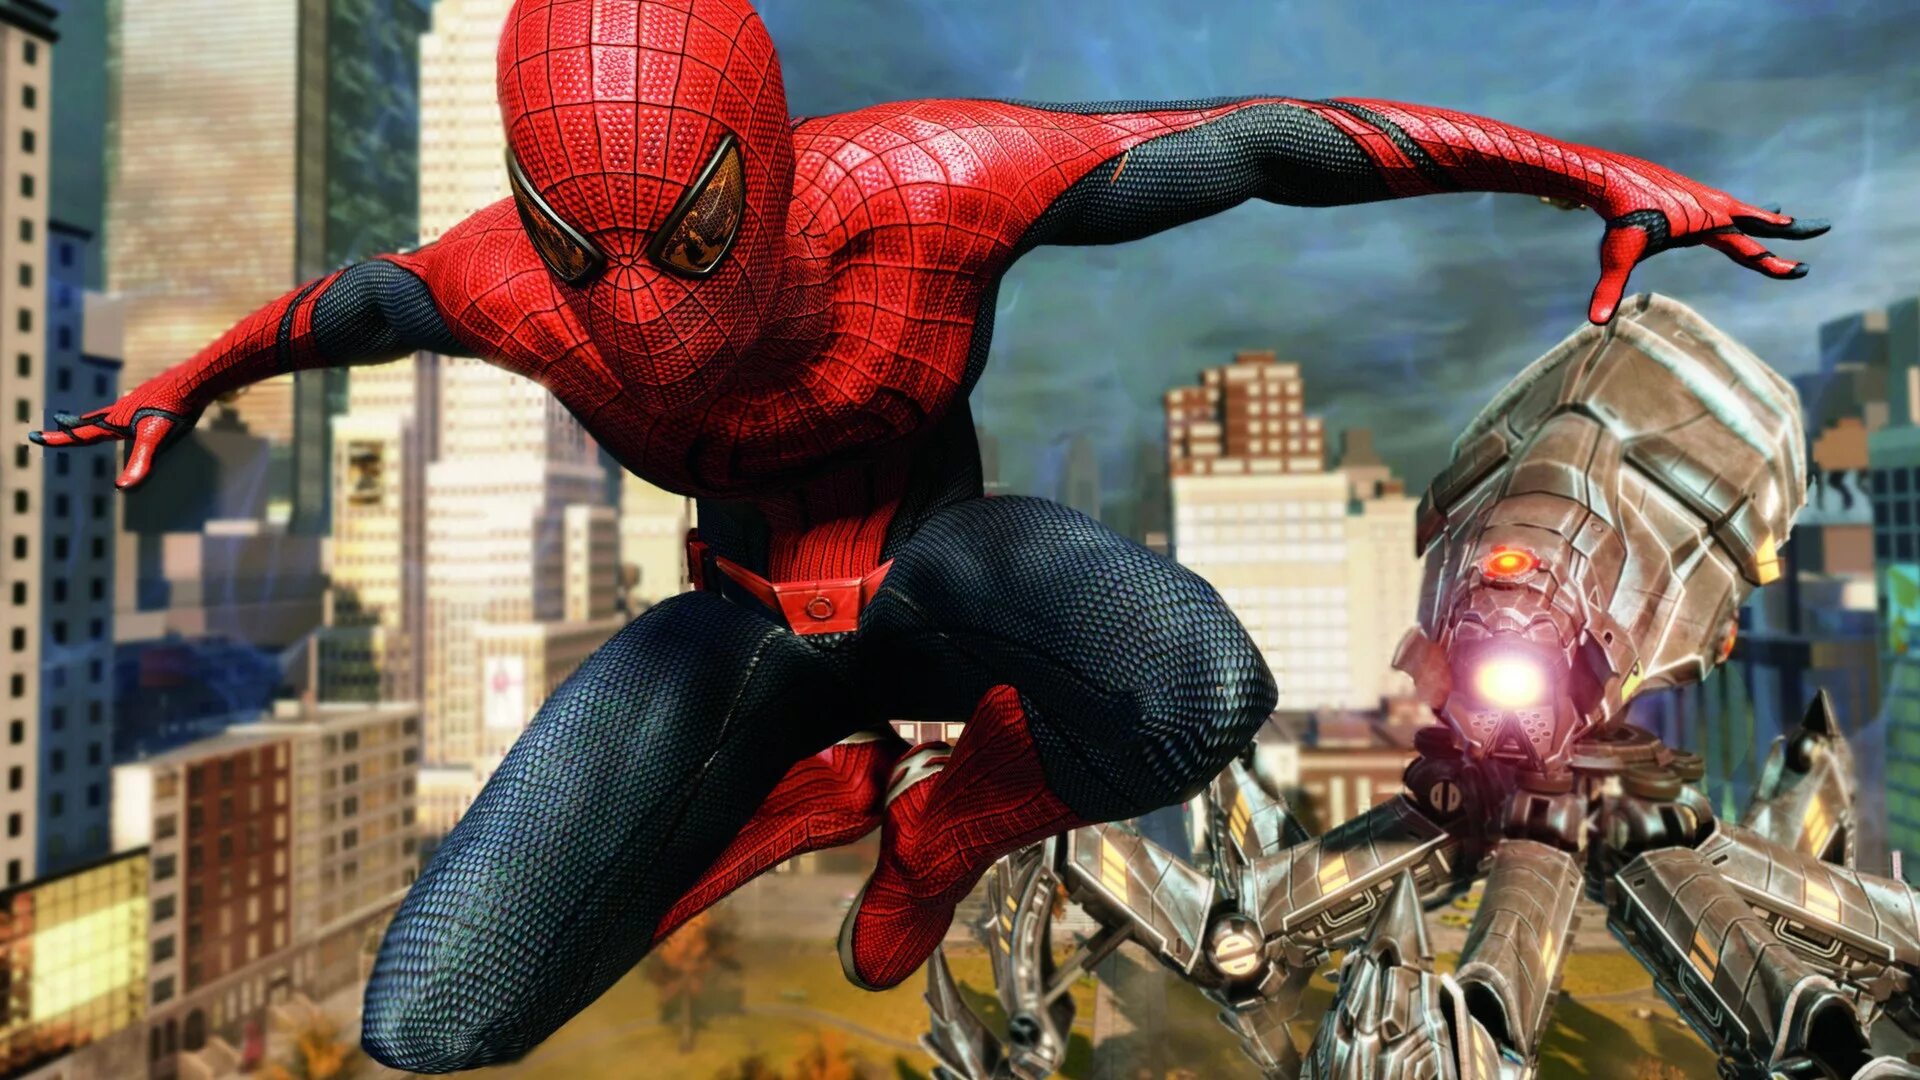 The amazing Spider-man (игра, 2012). Эмейзинг человек паук 1. Человек паук амазинг игра. Spider man 2012 игра.